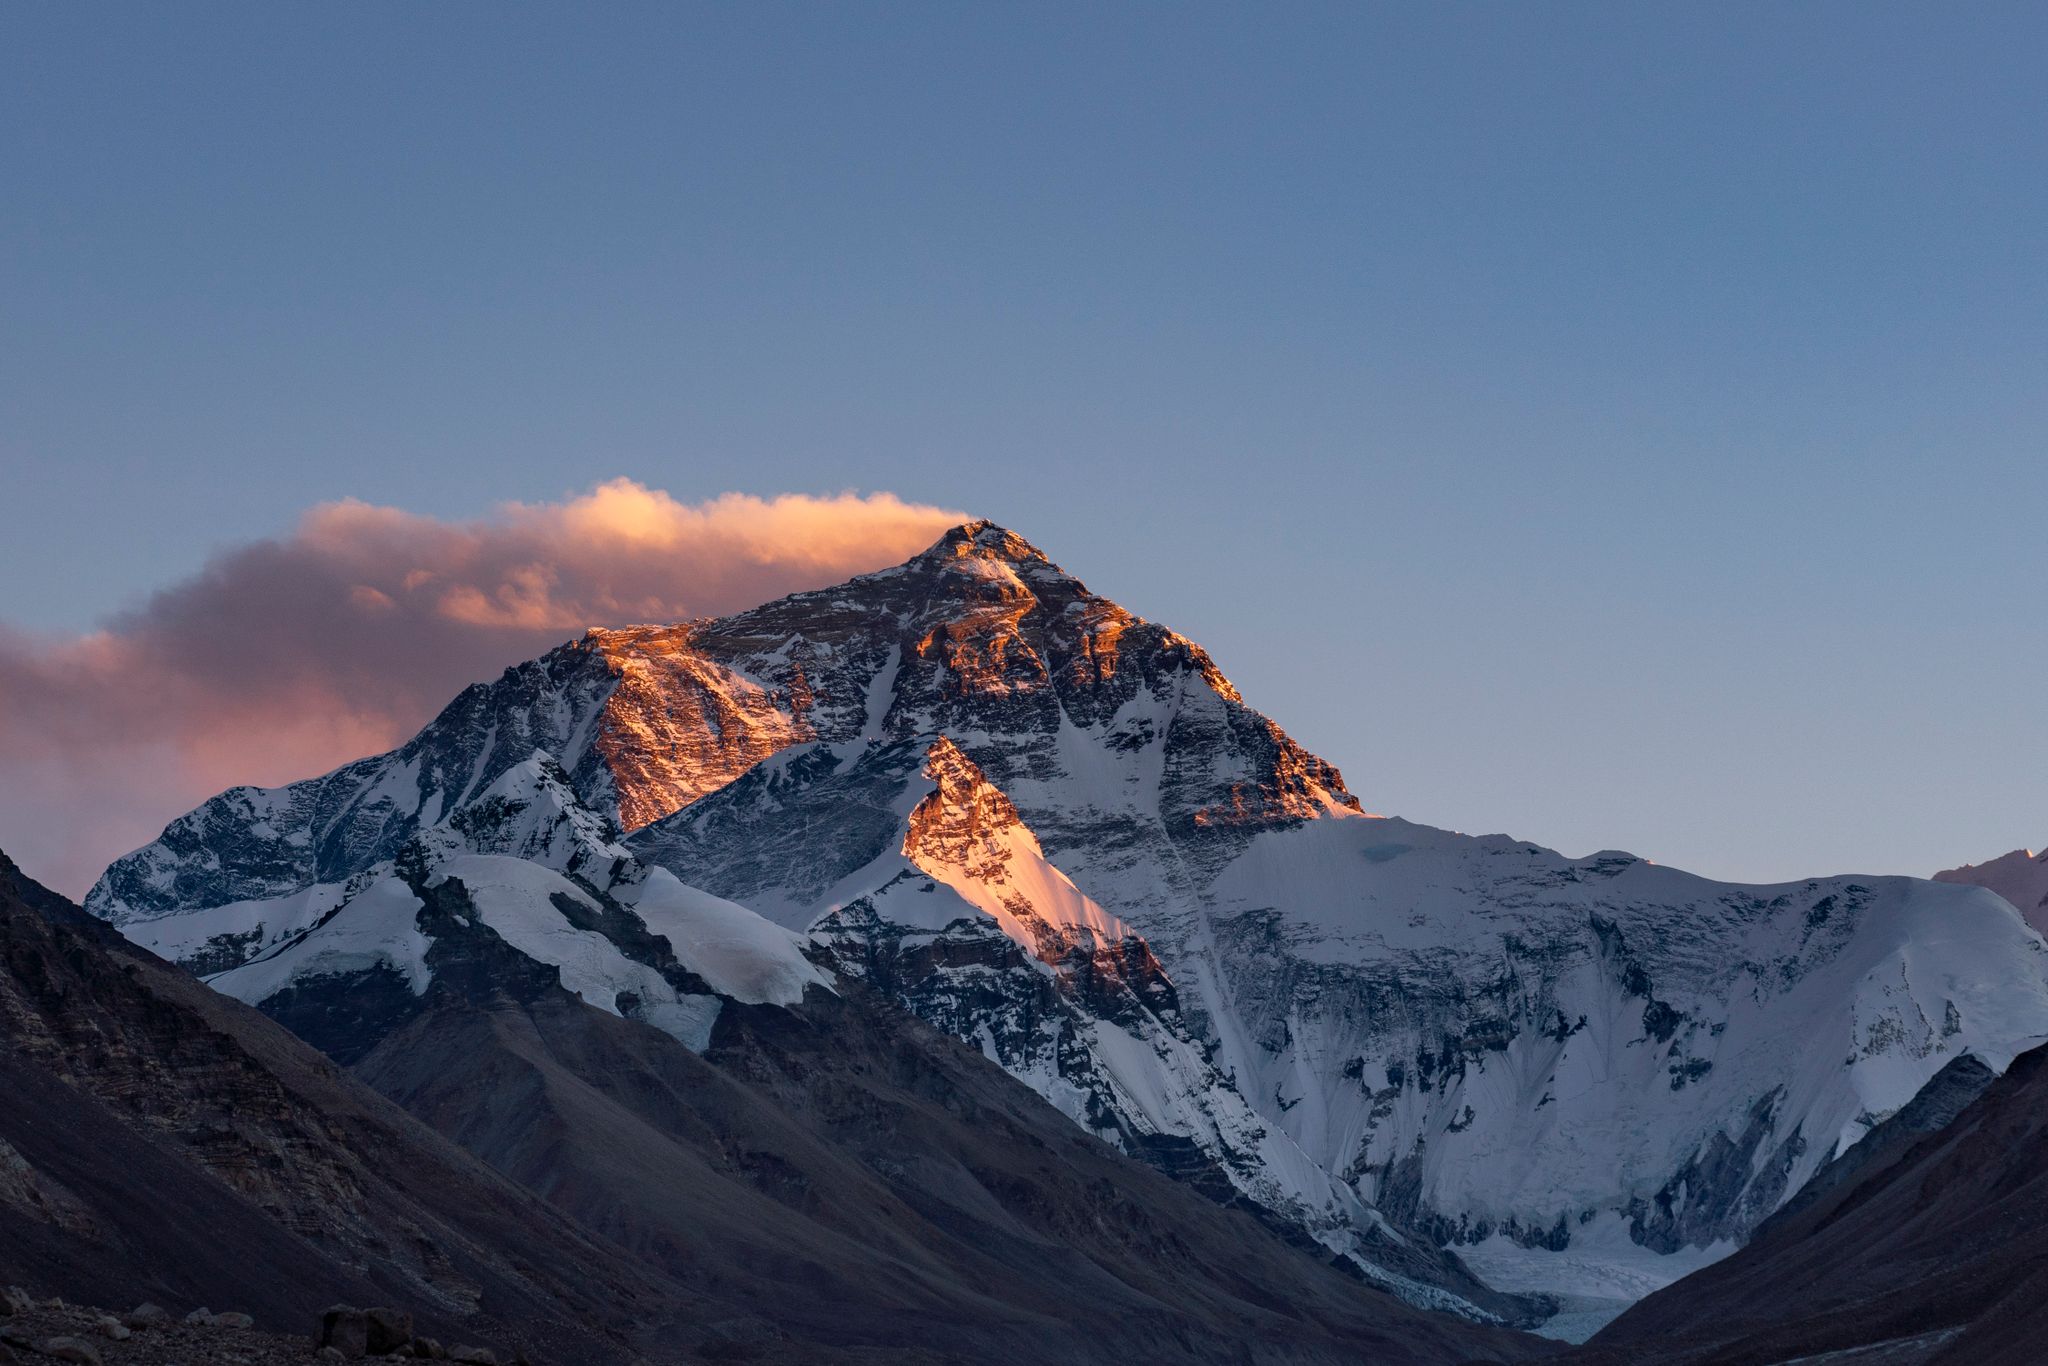 Zwei Bergsteiger vermisst auf dem Mount Everest